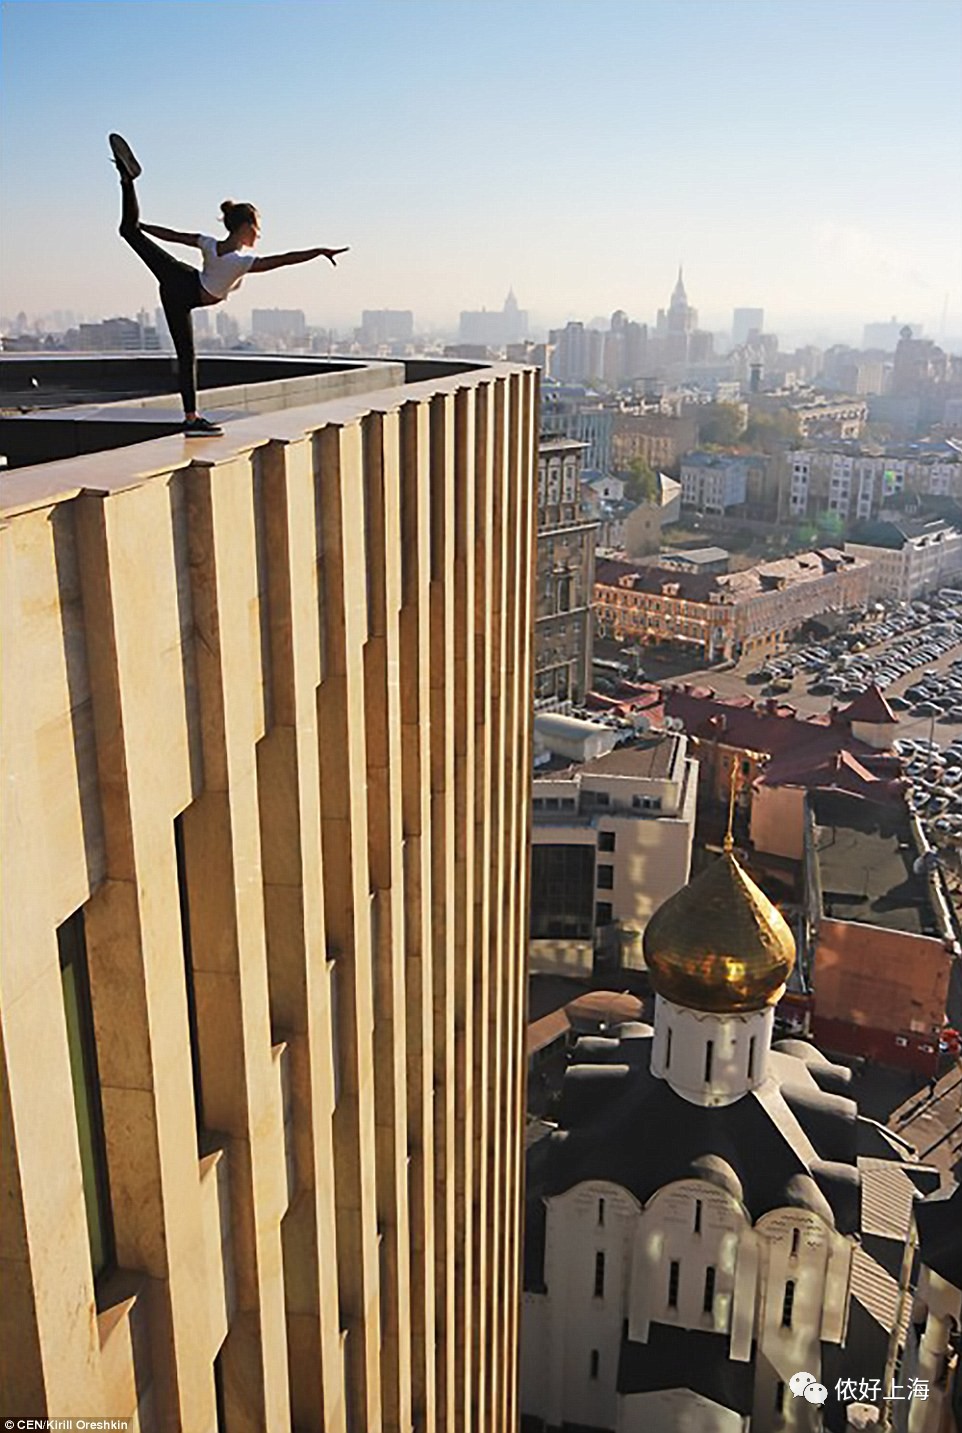 一对俄罗斯情侣,居然在上海各大高楼楼顶.